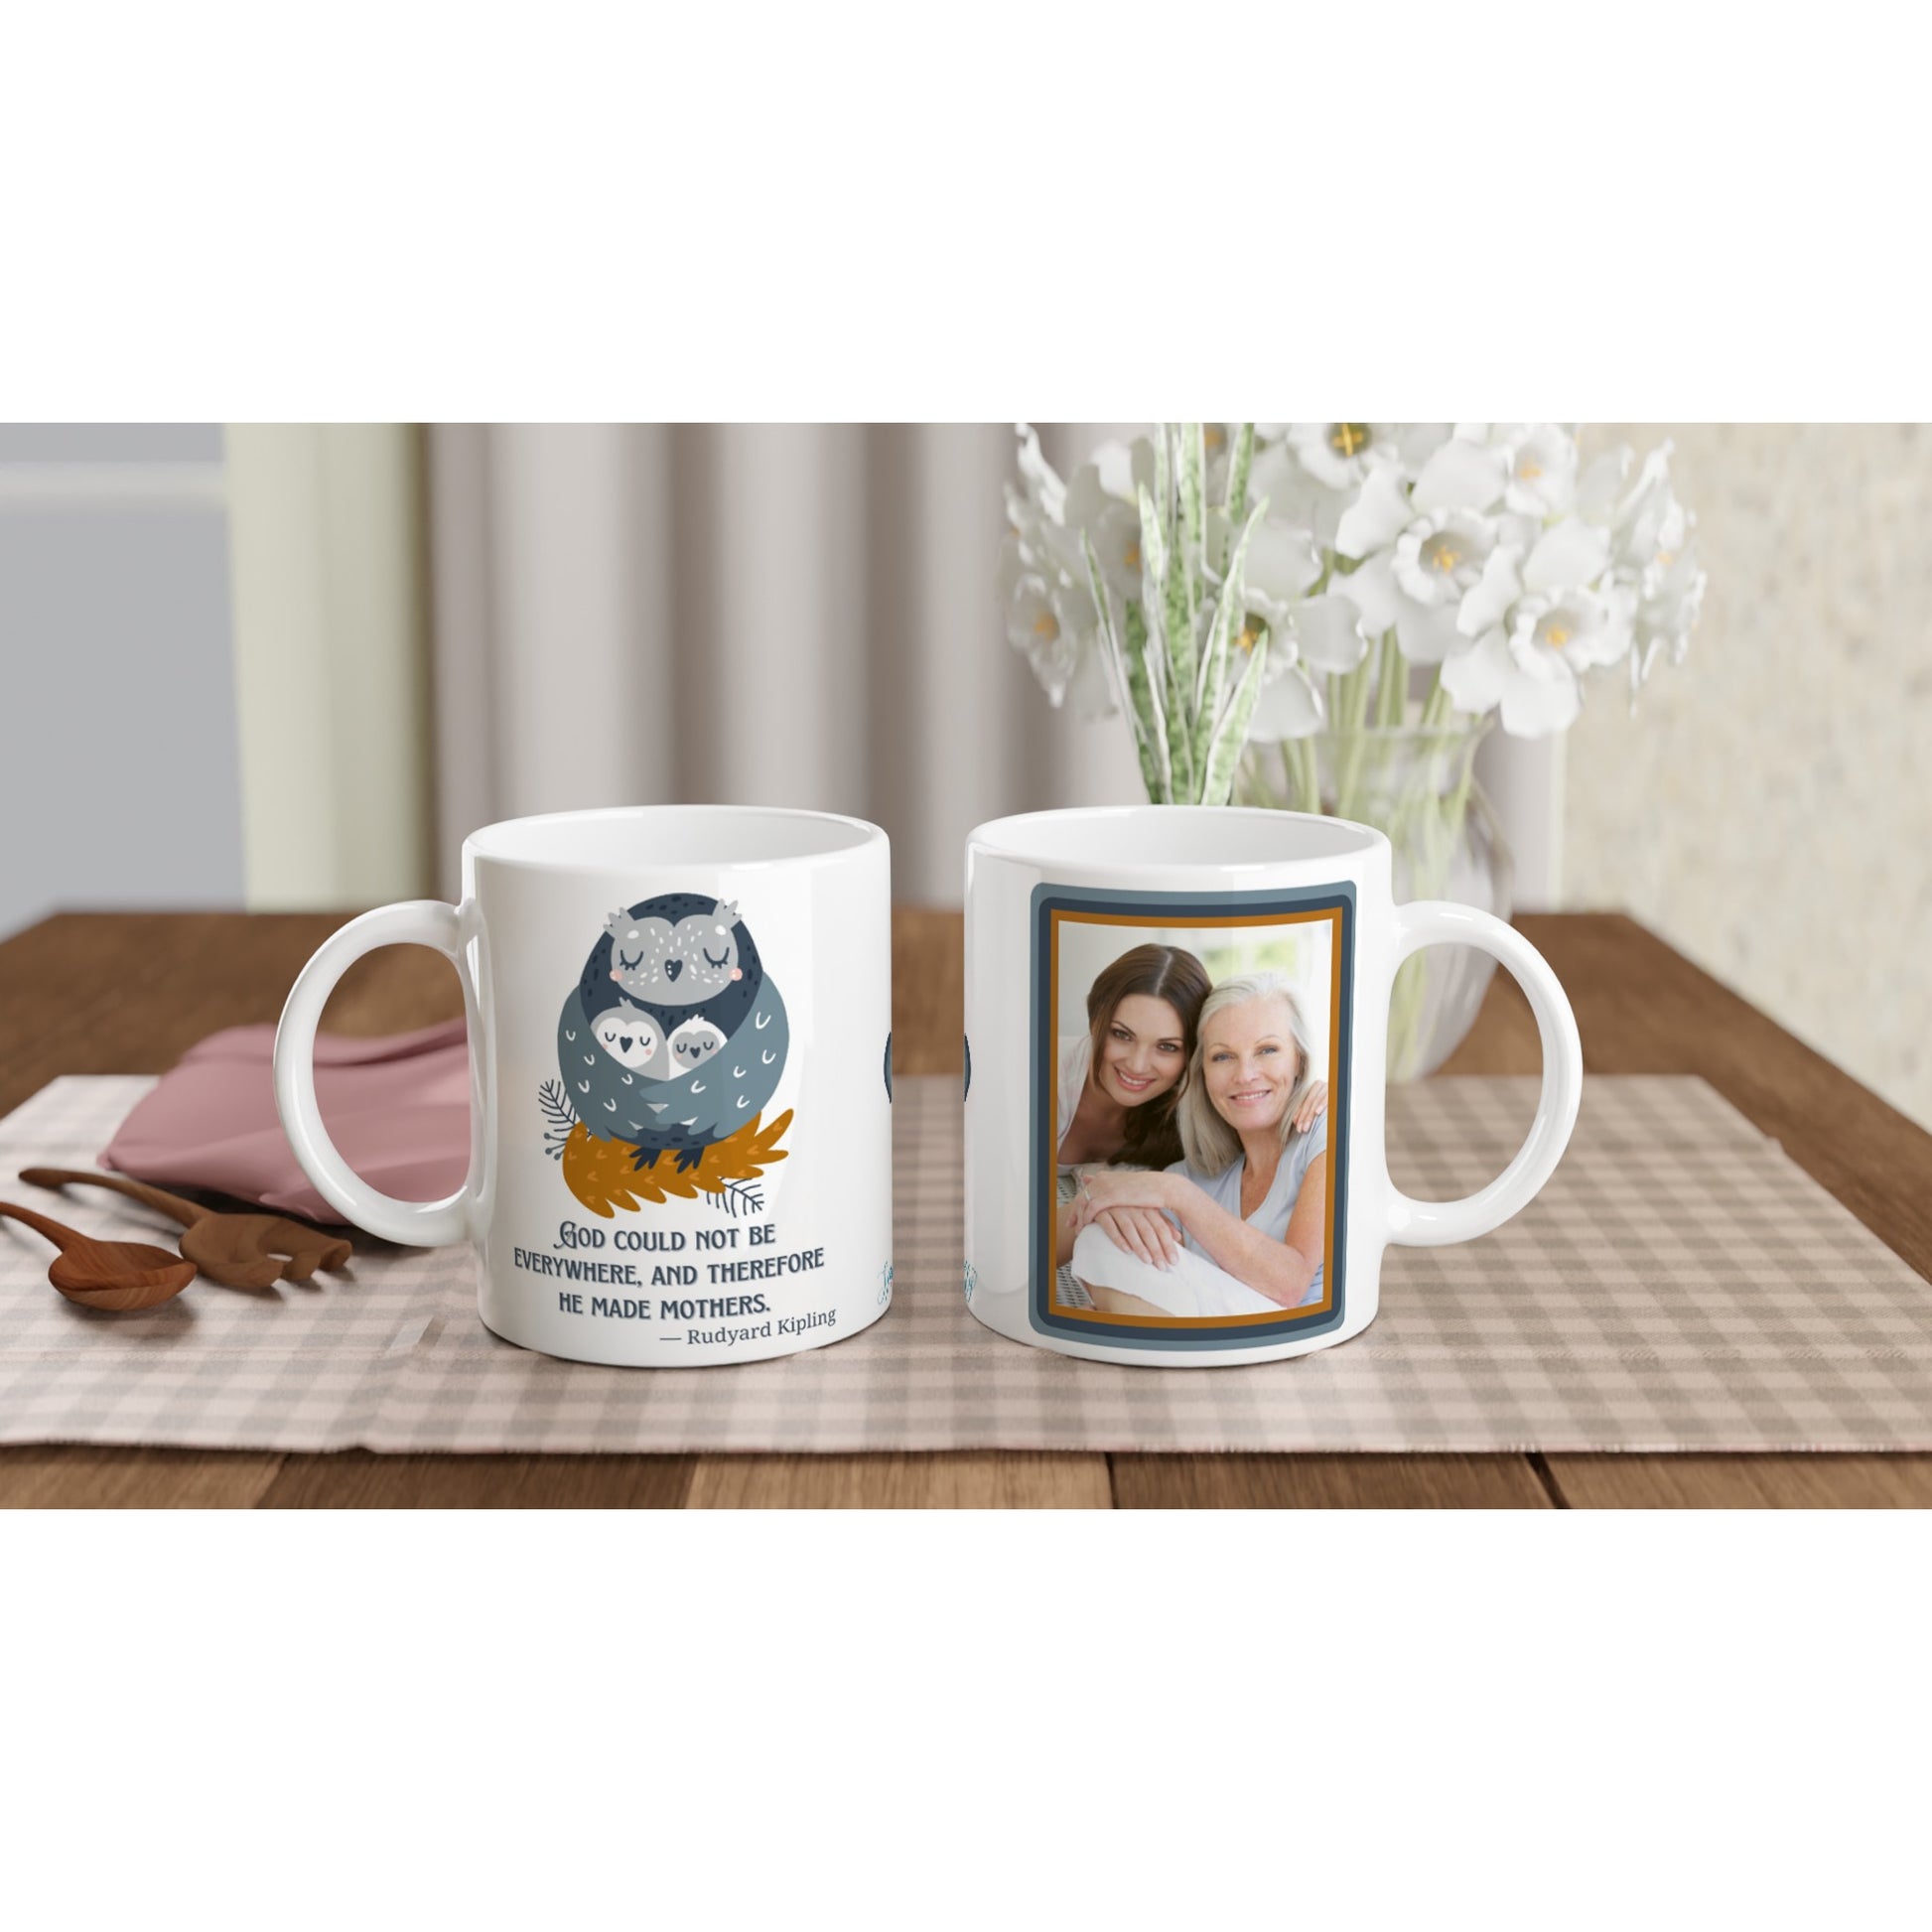 Rudyard Kipling "God...made mothers" Customizable Photo 11 oz. Mug on table